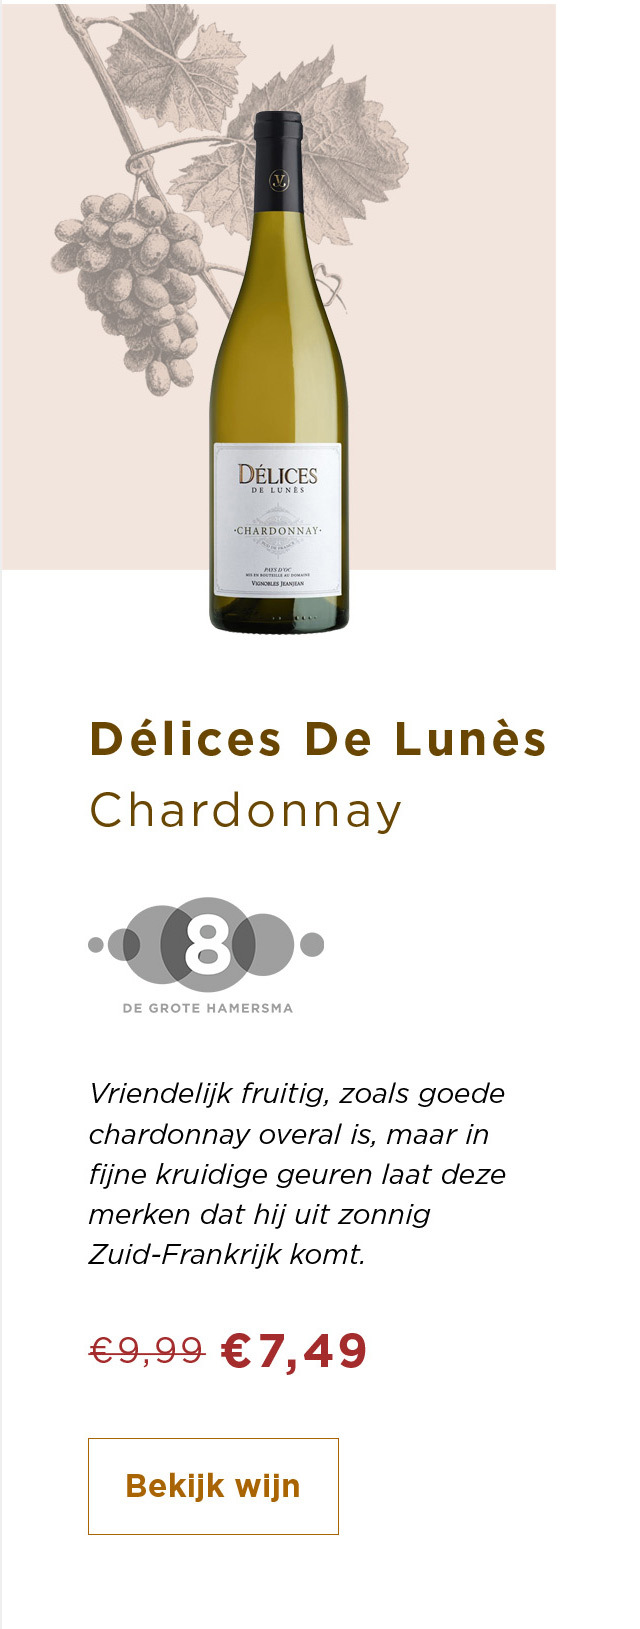 Délices De Lunès Chardonay van 9.99 voor 7.49 | Bekijk wijn